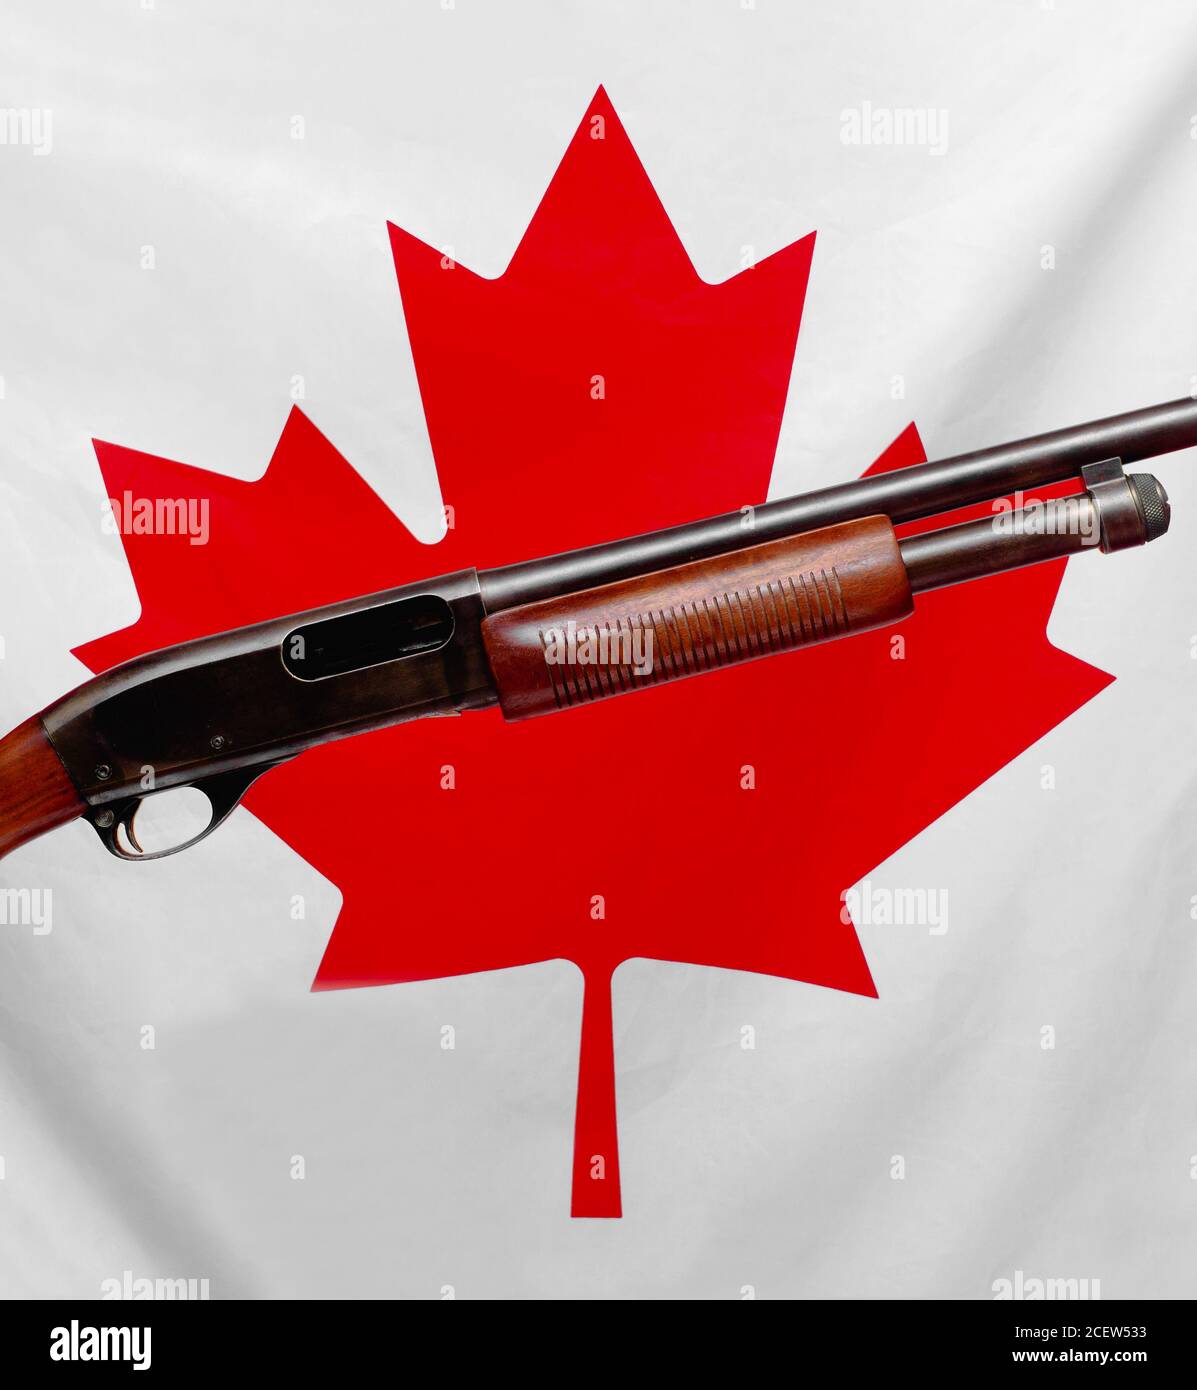 Fusil de chasse et feuille d'érable canadienne symbolisant le contrôle et les droits des armes à feu Banque D'Images